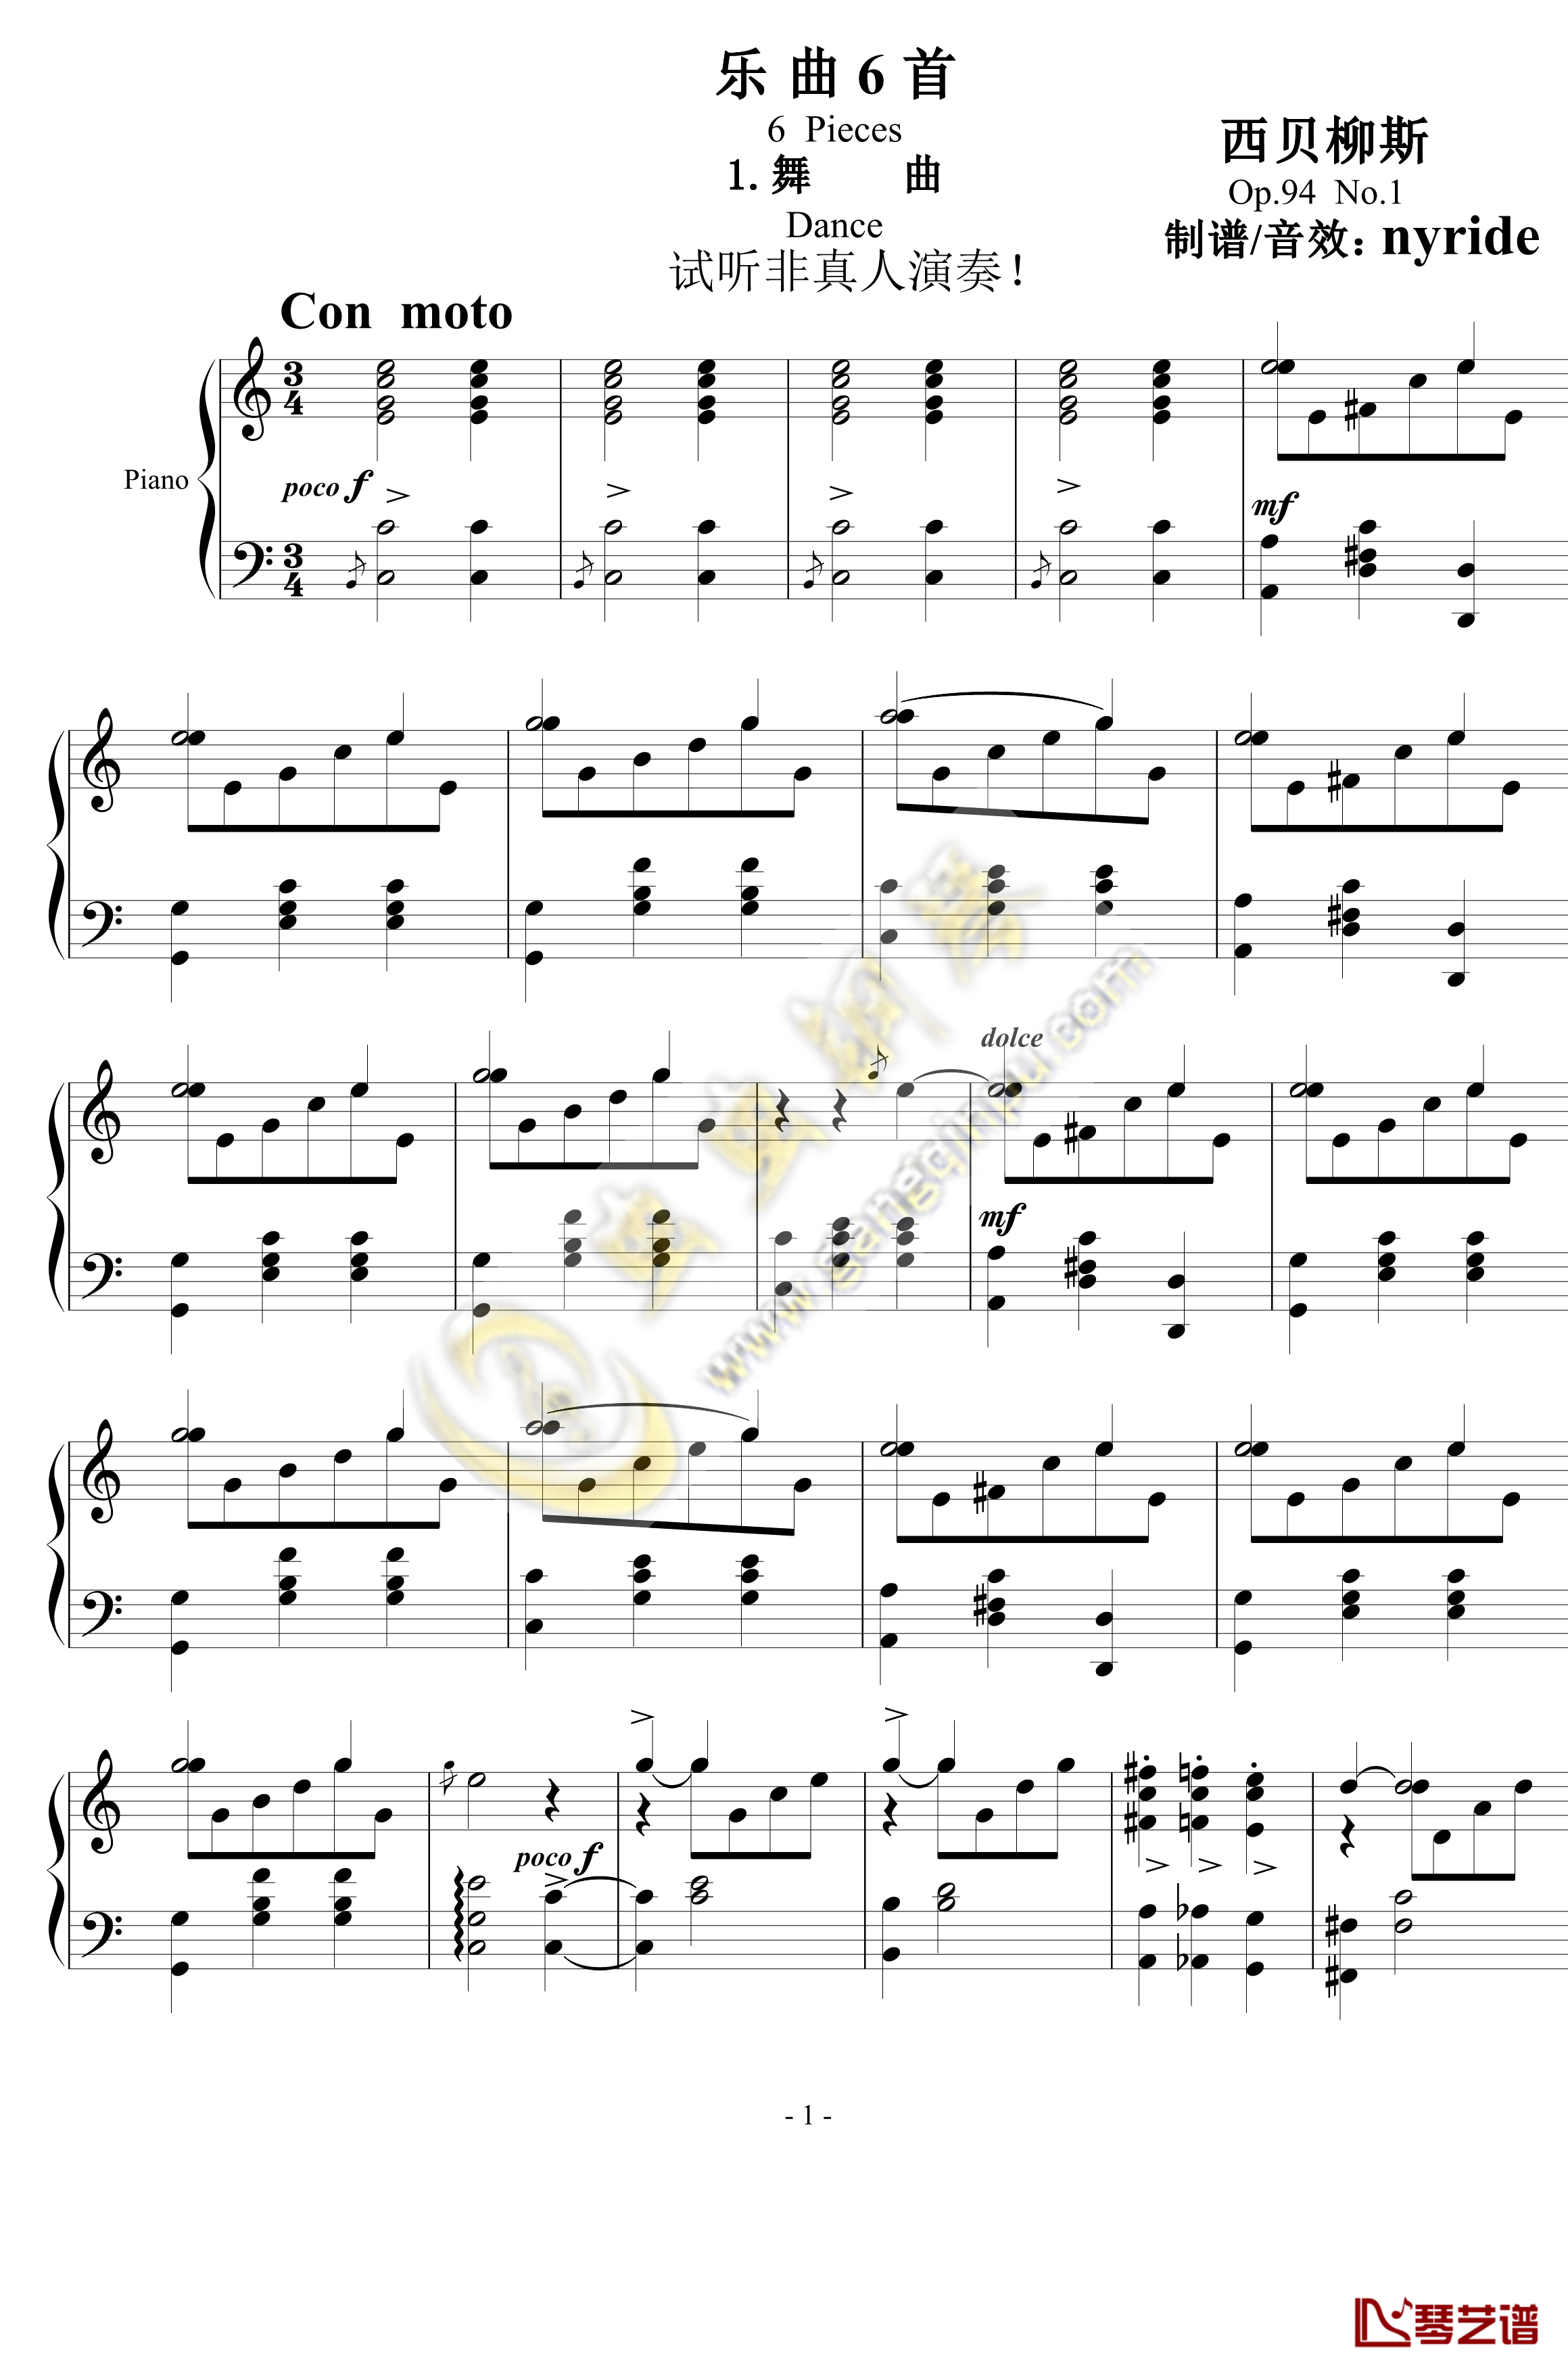 舞曲钢琴谱1-Op.94  No.-西贝柳斯1